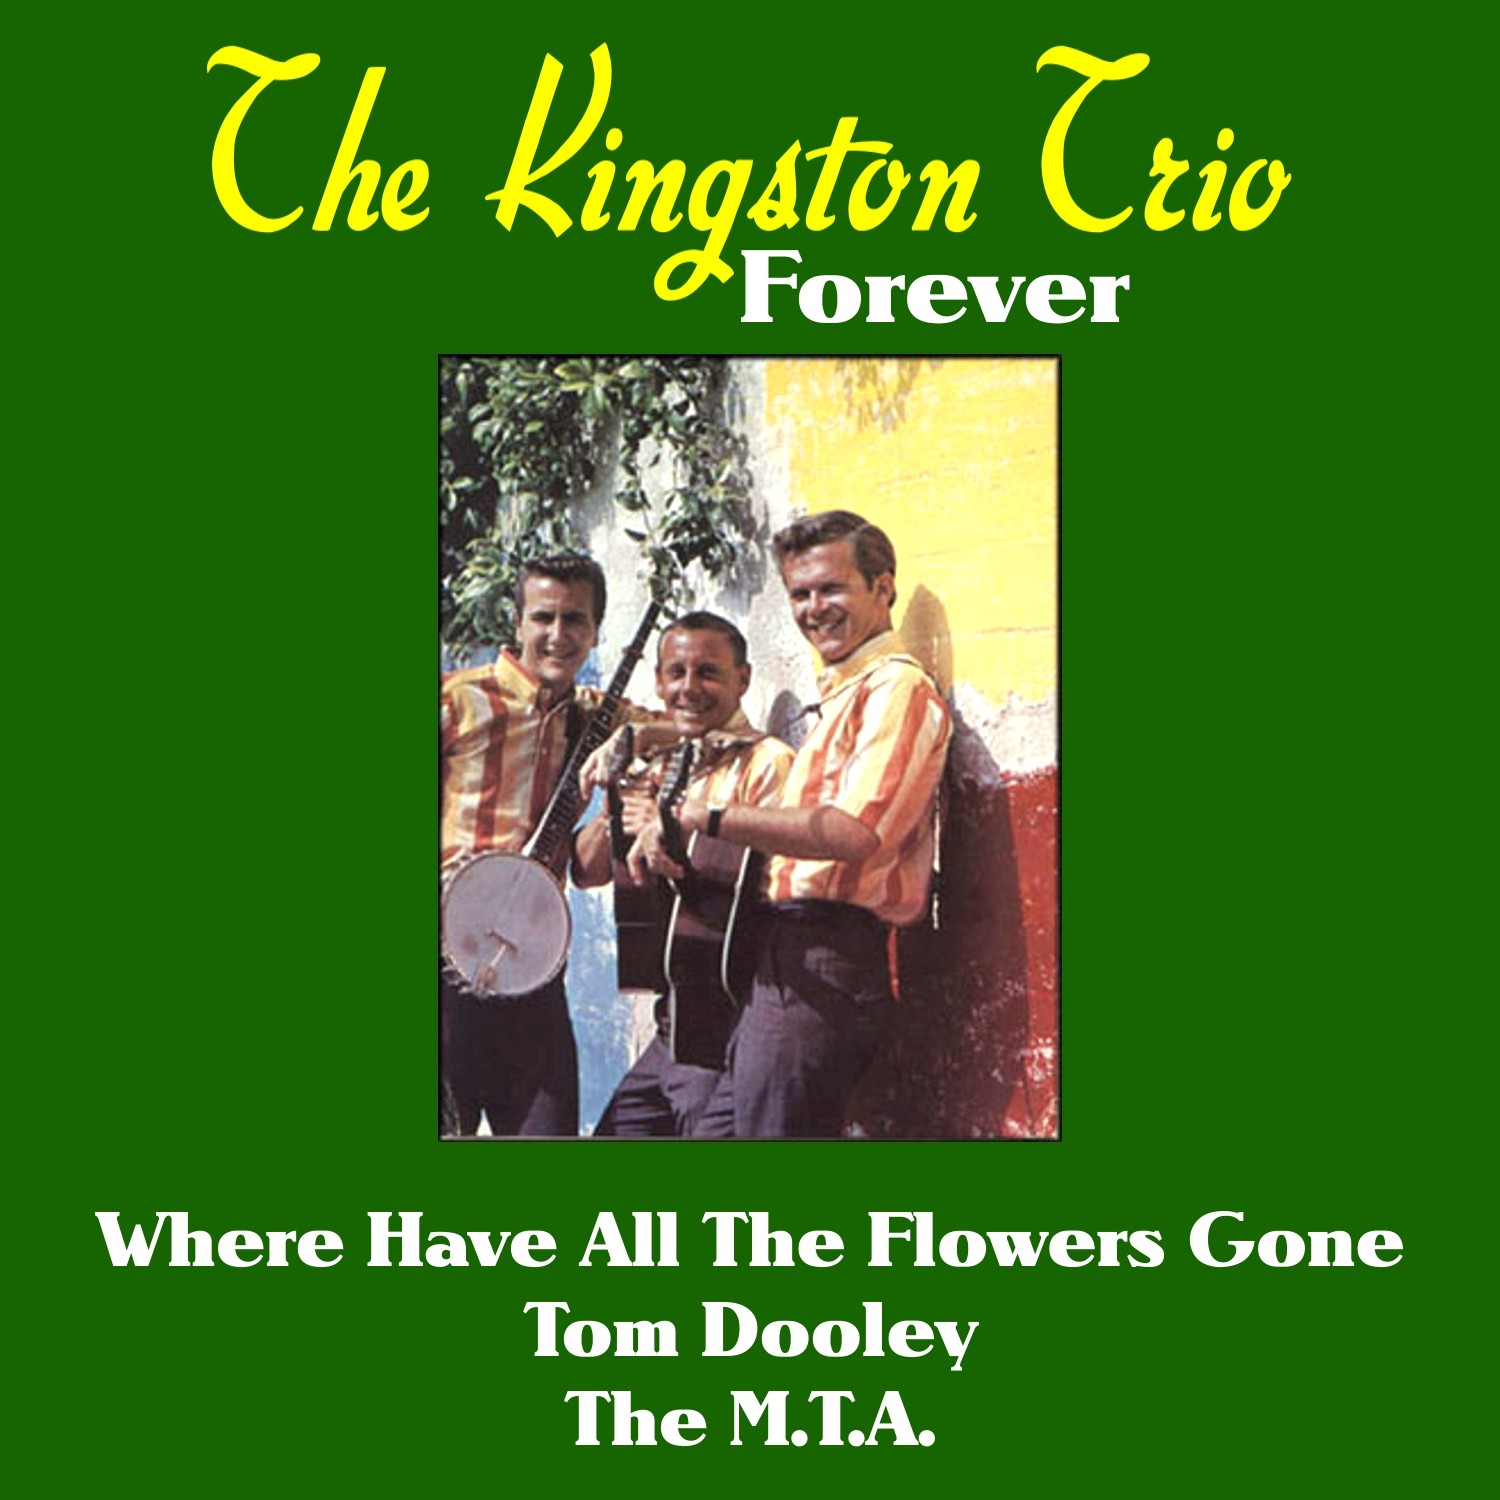 The Kingston Trio Forever